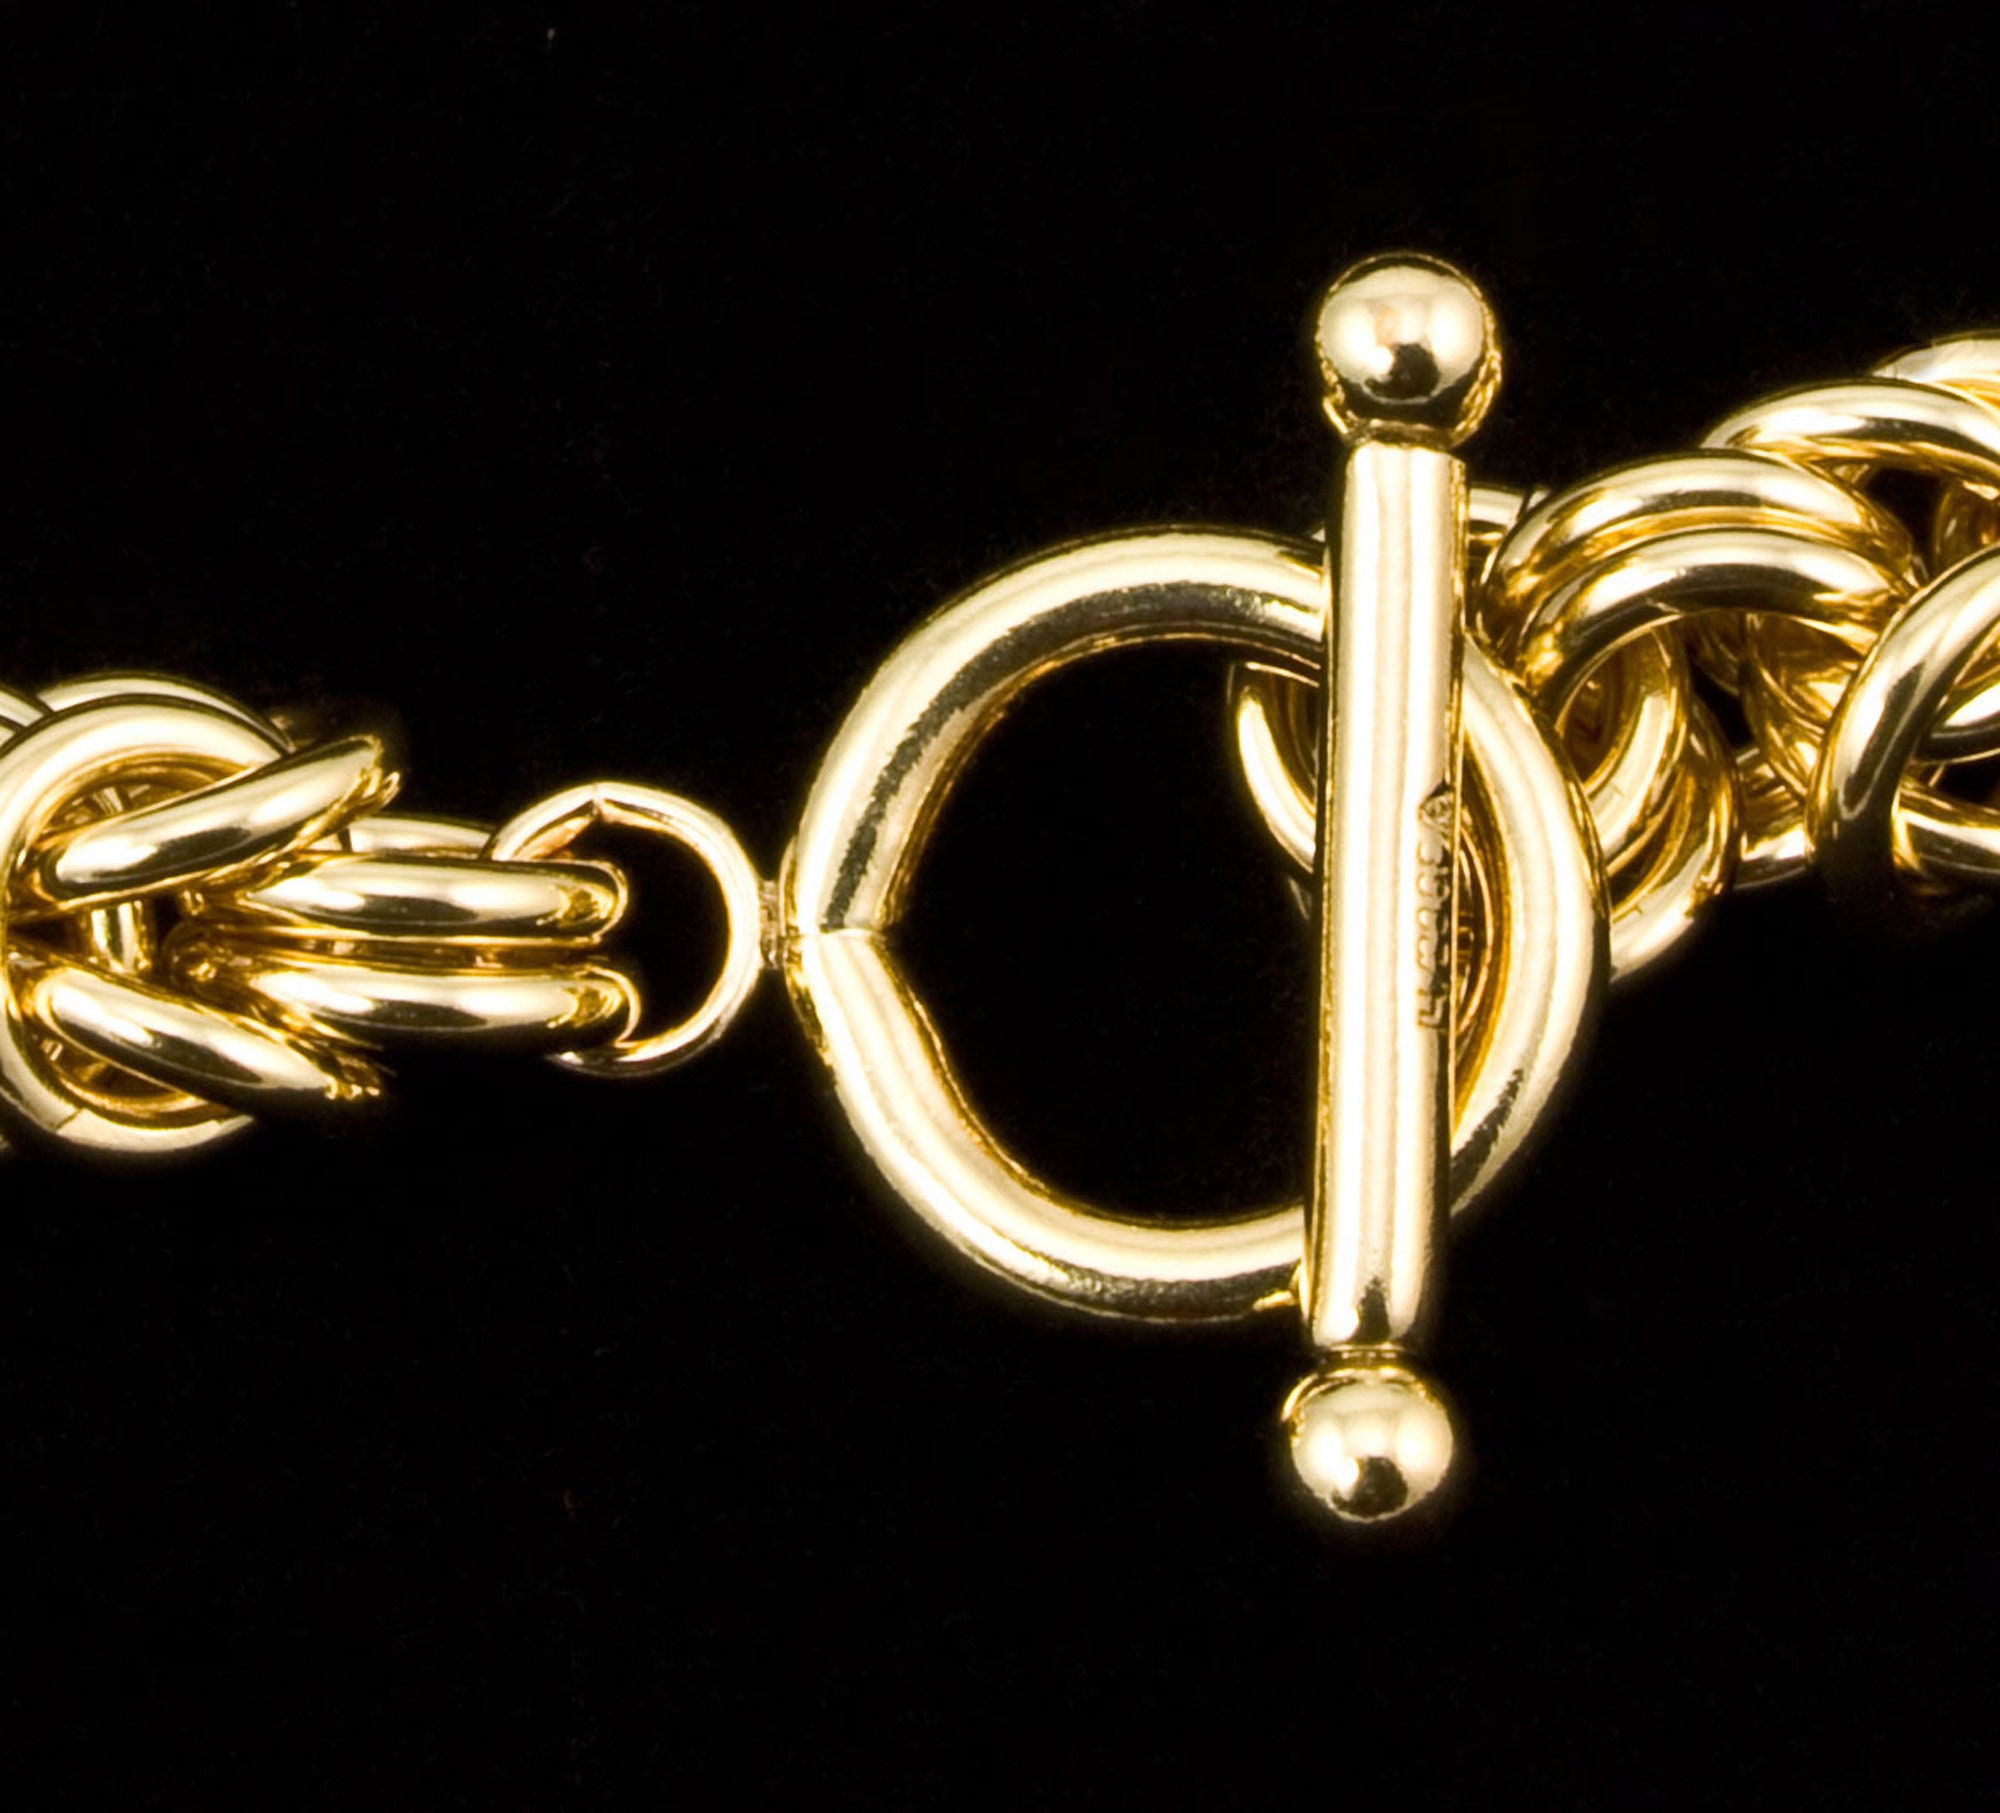 Byzantine Chain Mail Bracelet Materials KIT - PKlein Jewelry Design